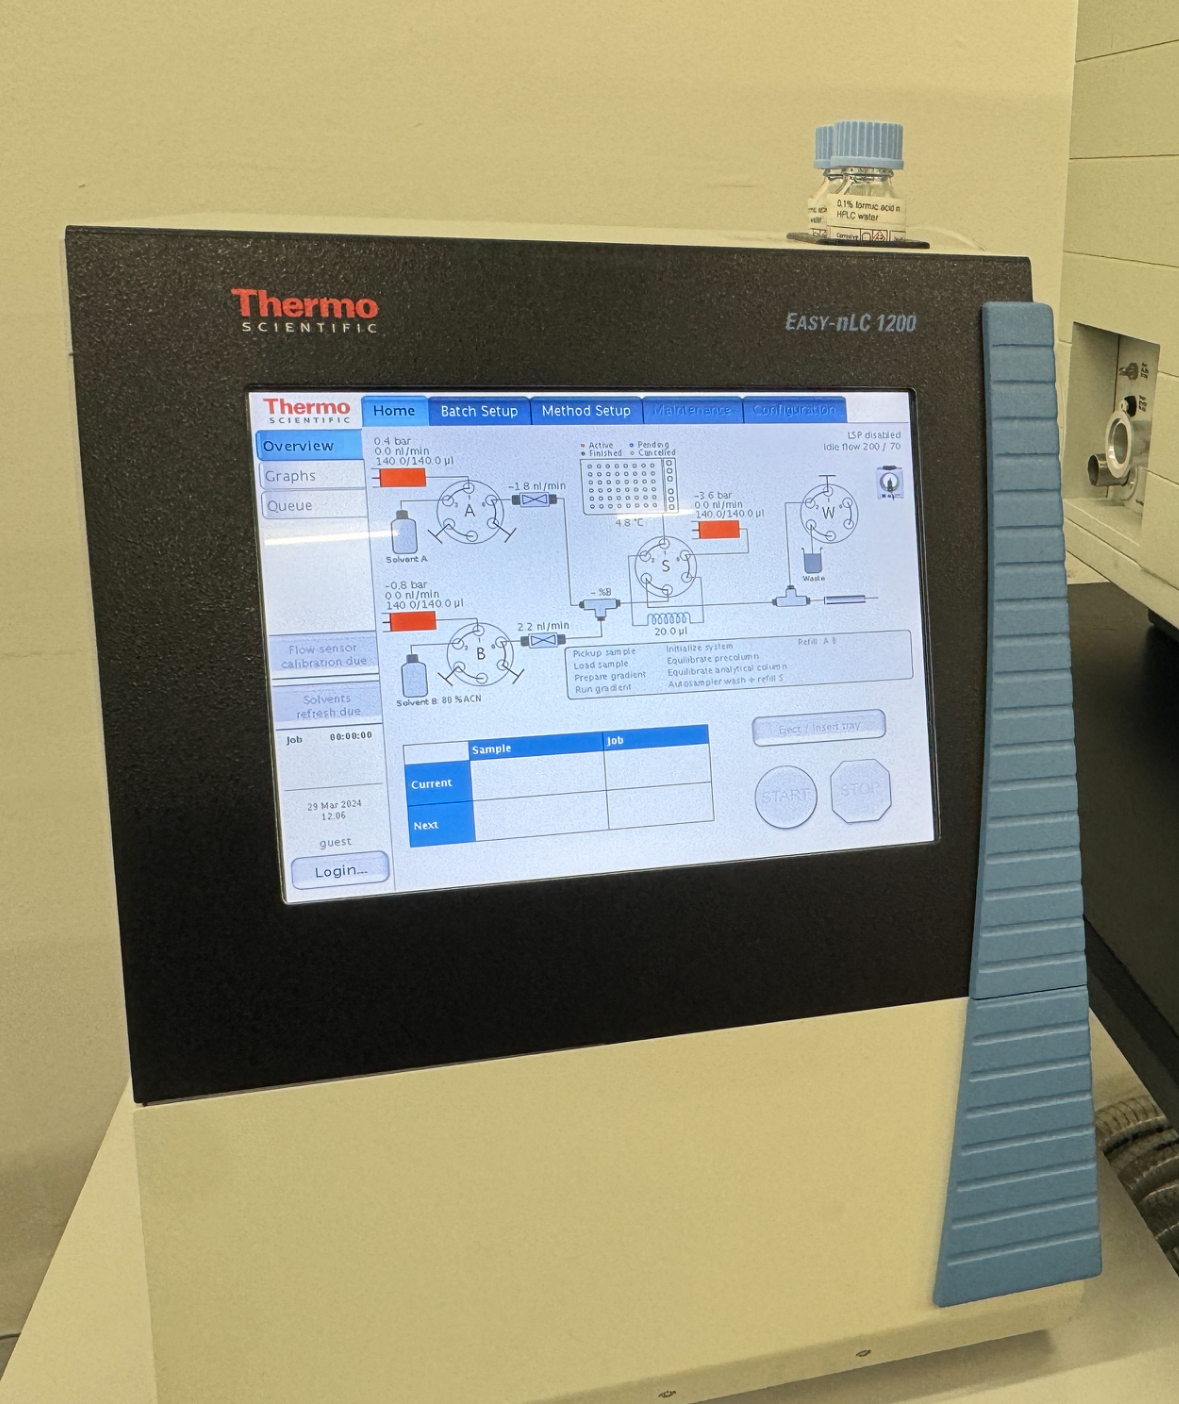 2016 Thermo Scientific Easy nLC 1200, Nano Liquid Chromatography